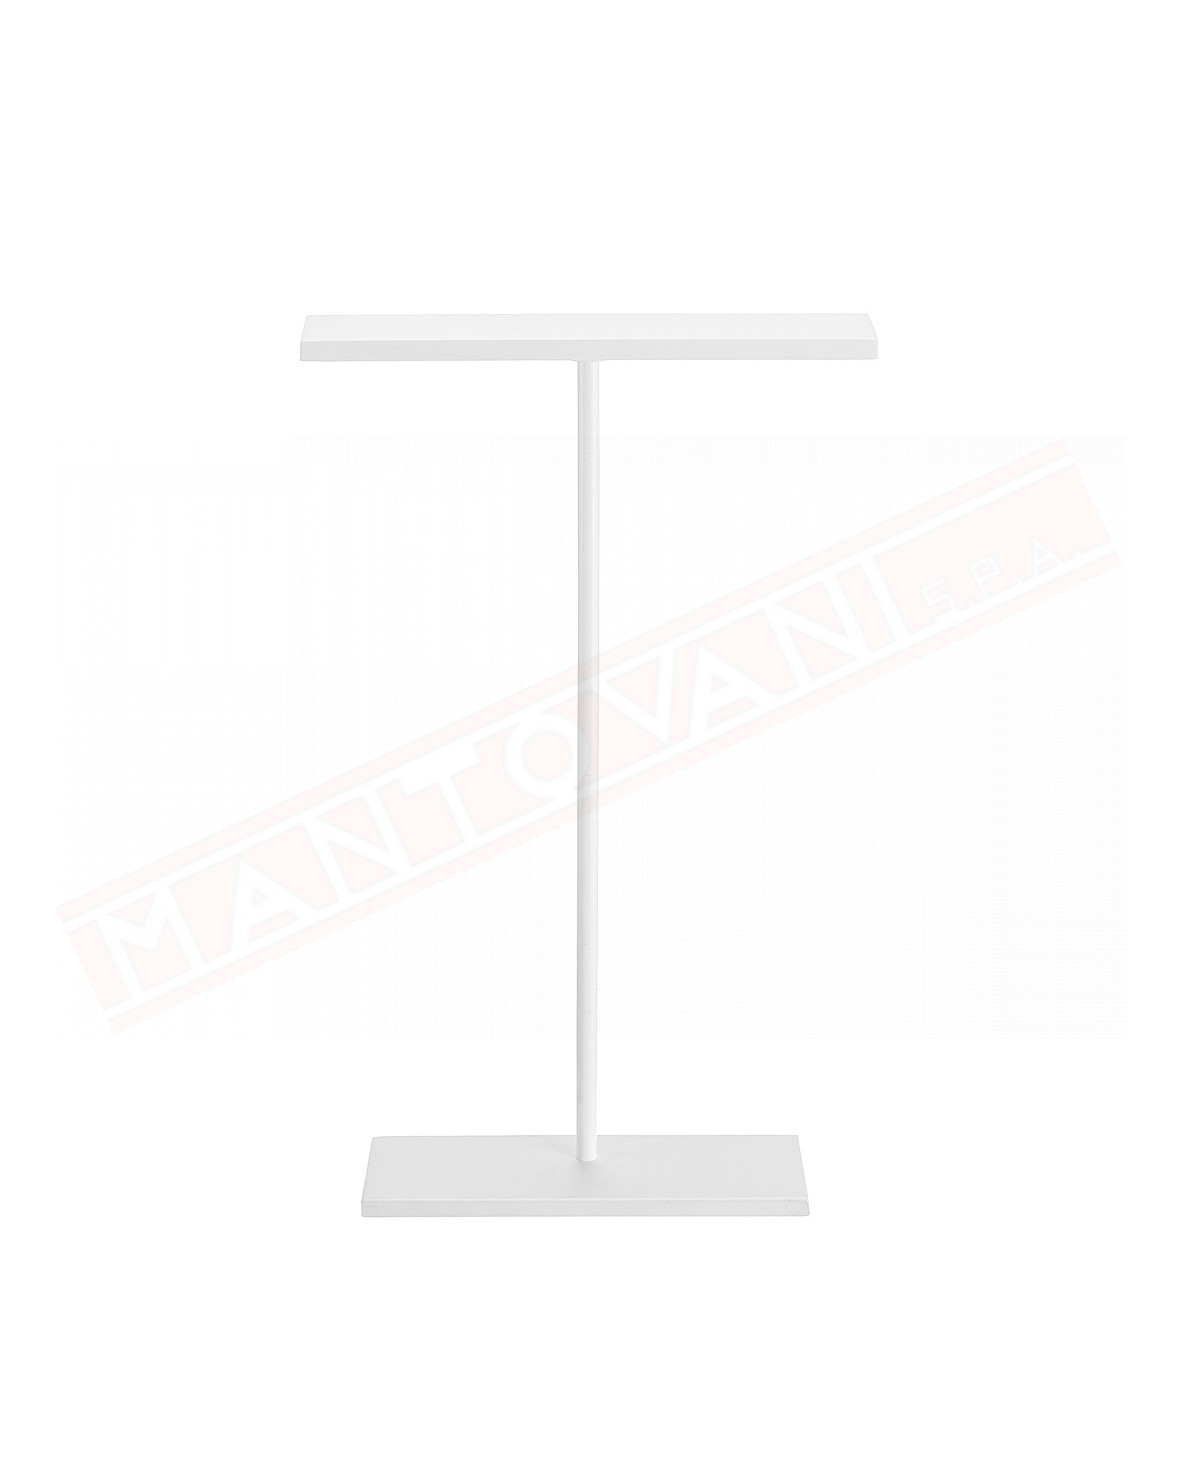 Linealight Dubight -C Tab lampada da tavolo a led 7 w 835 lm 3000 k bianca misure 363x225x59